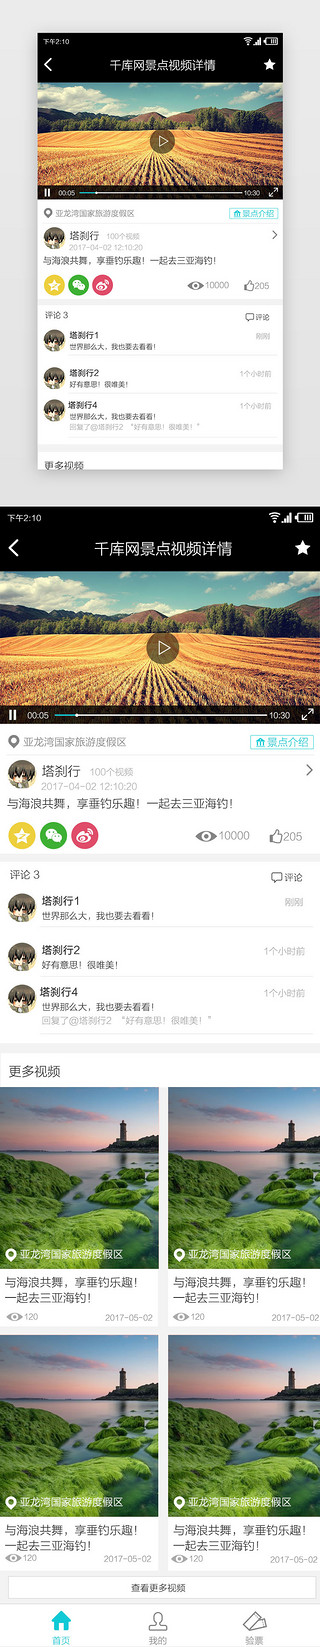 广州景点UI设计素材_旅游APP景点视频详情页面